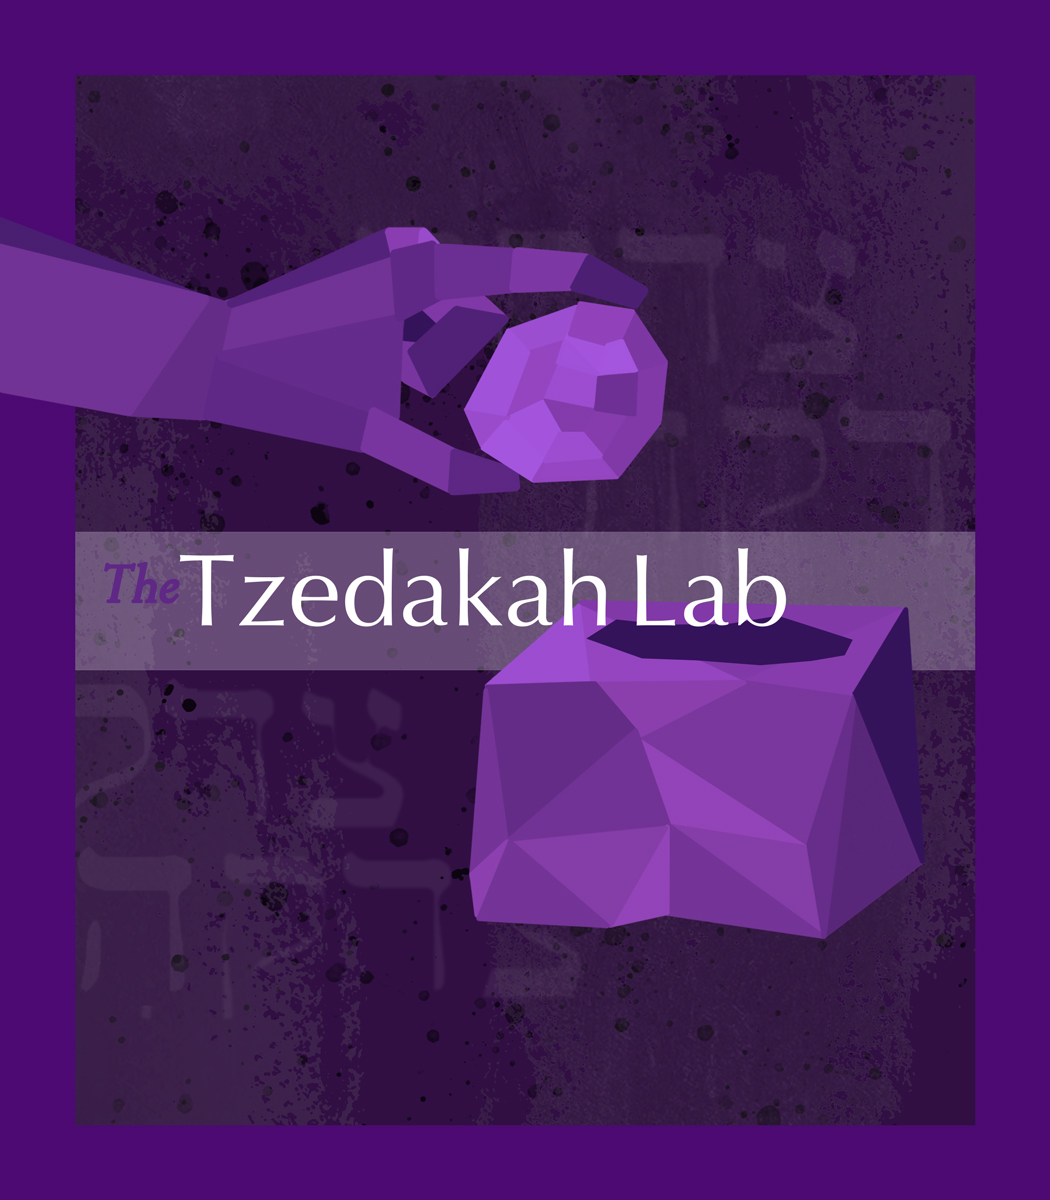 Tzedakah lab full color logo